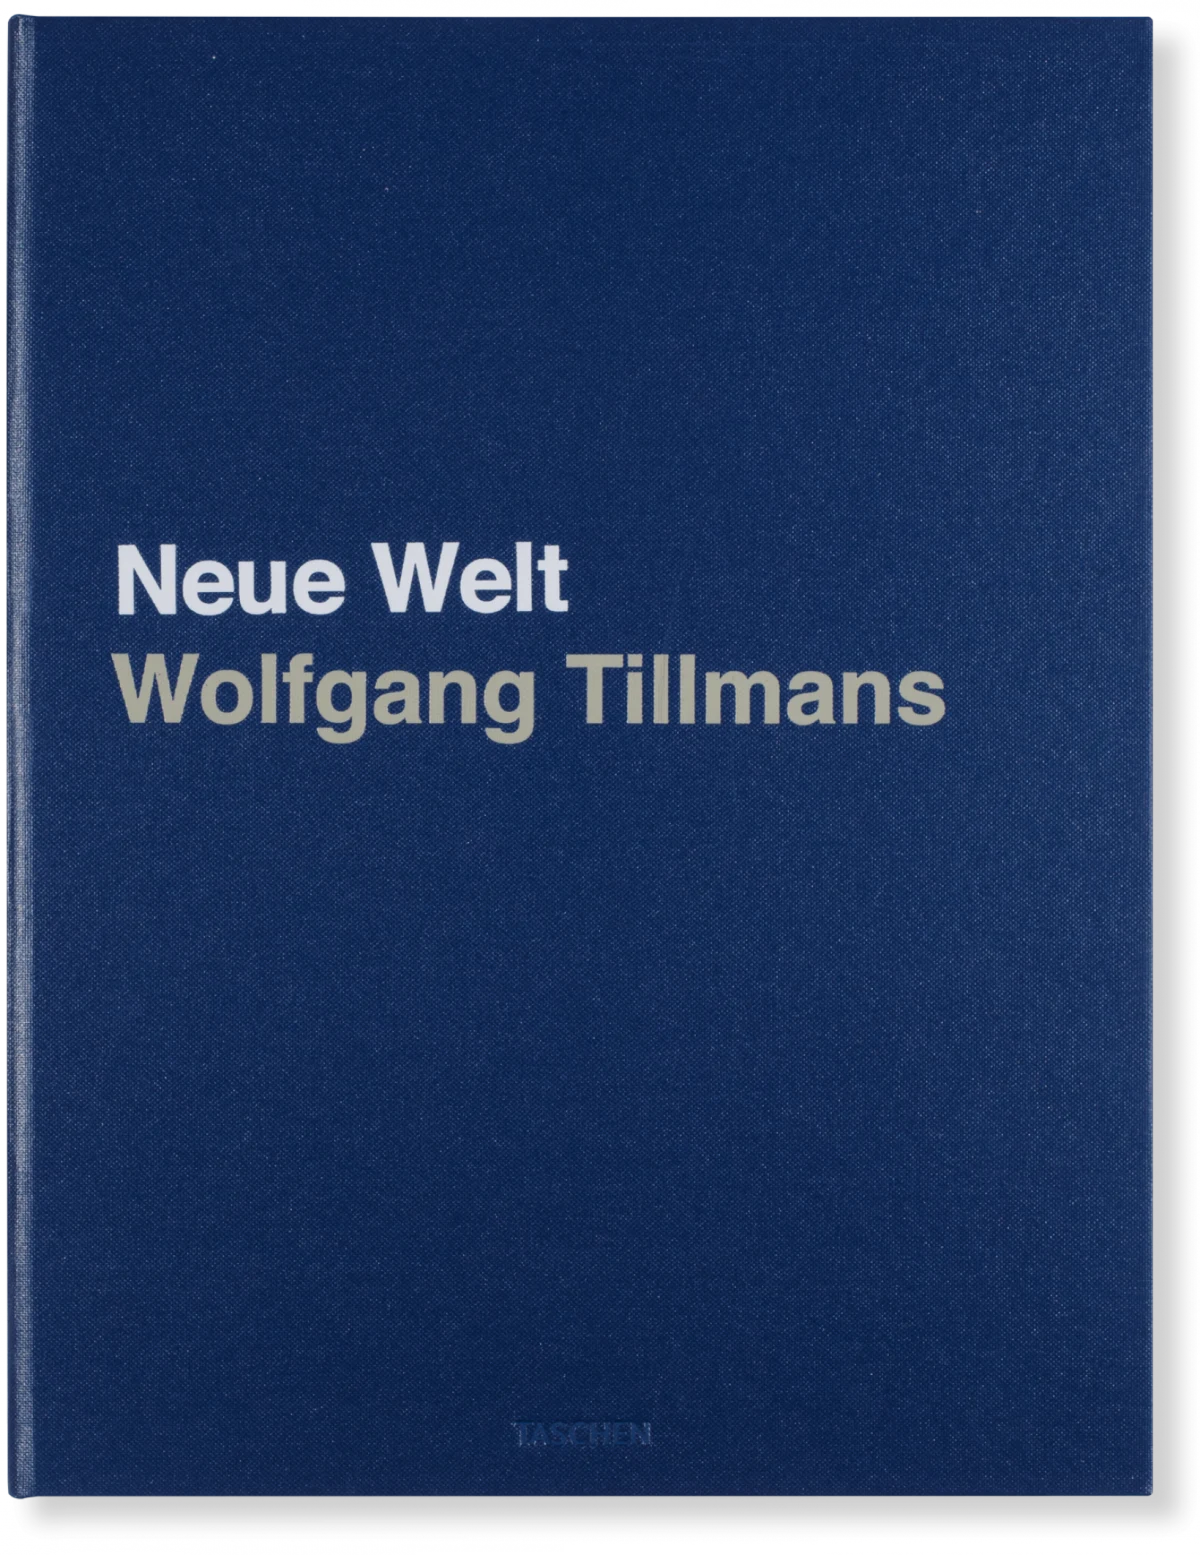 Wolfgang Tillmans. Neue Welt, Art Edition